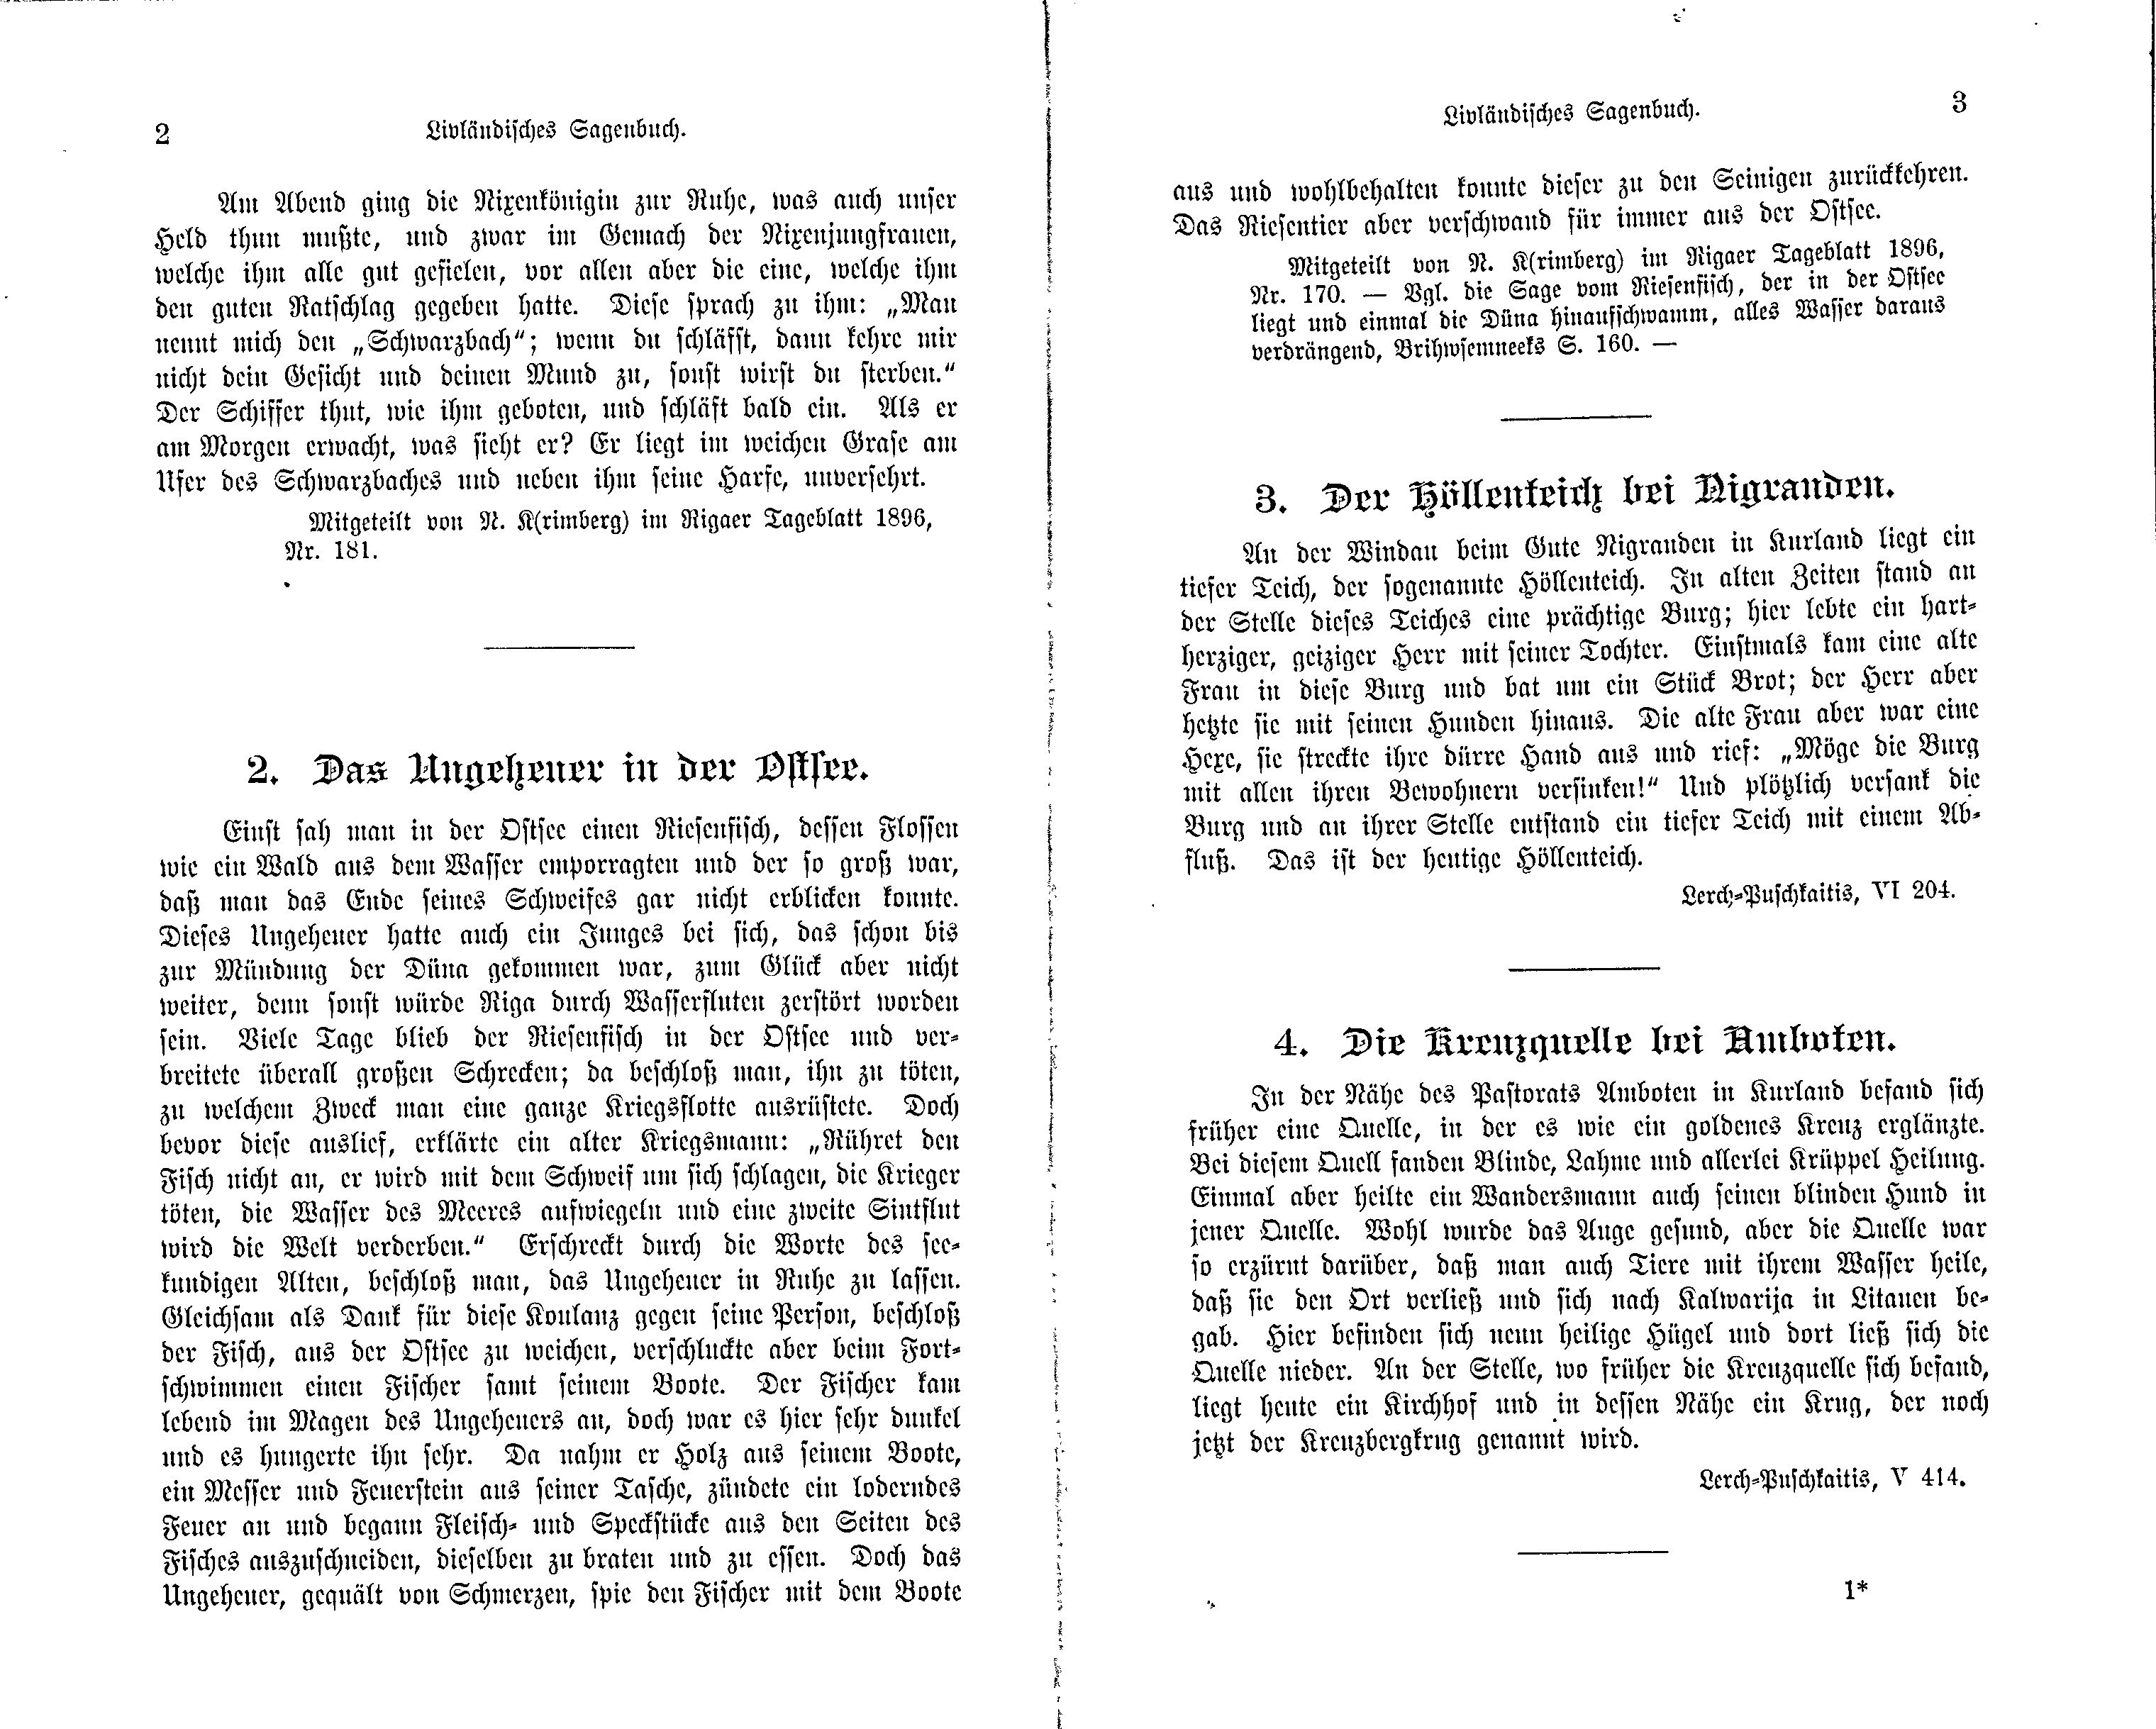 Der Höllenteich bei Nigranden (1897) | 1. (2-3) Основной текст